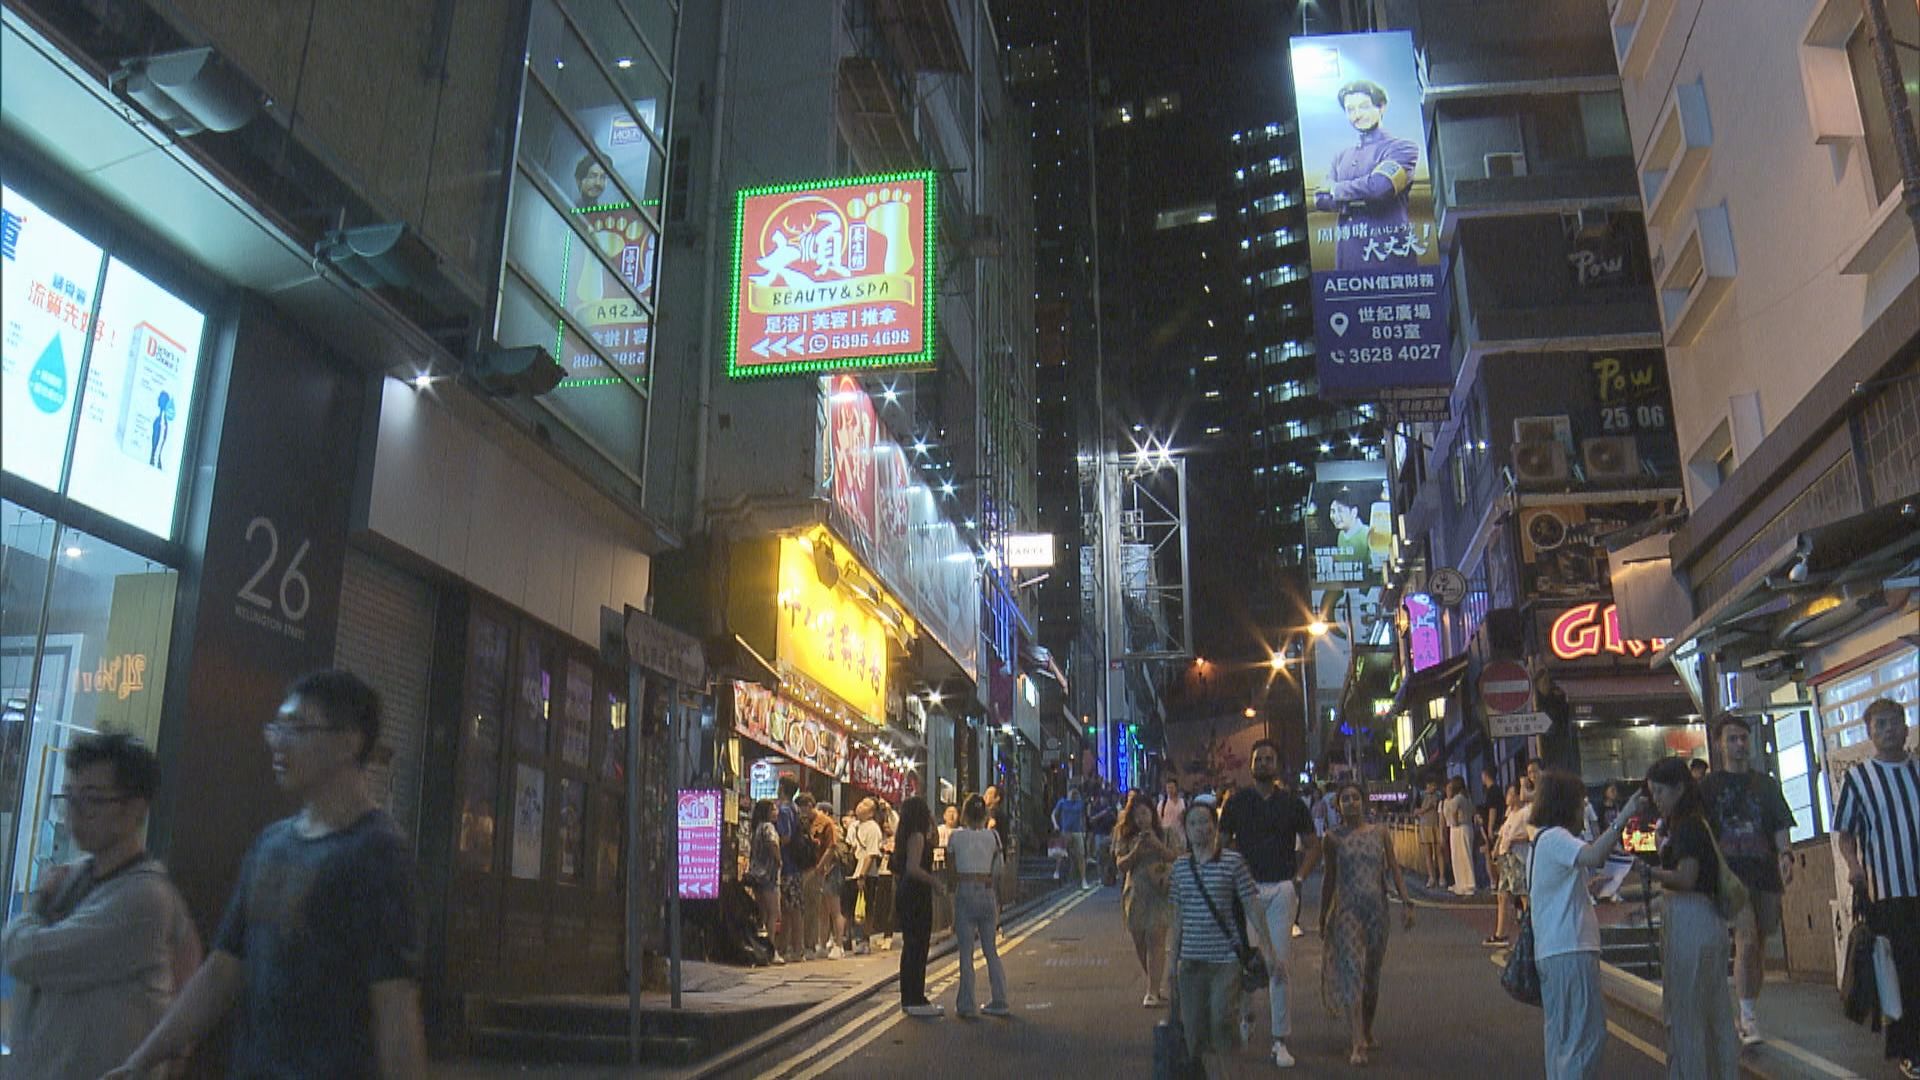 【香港夜繽紛】飲食酒吧業界反應正面 倡政府配合人手及交通